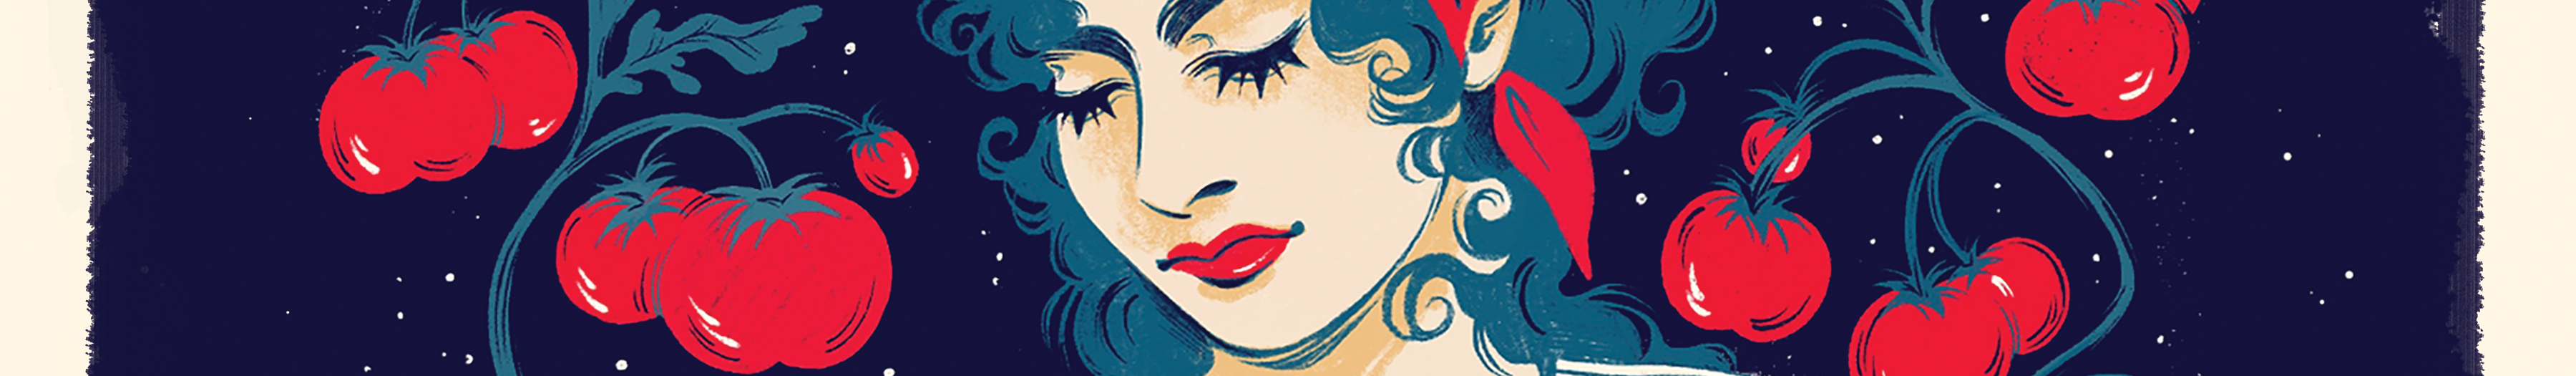 Mia Carnevale's profile banner